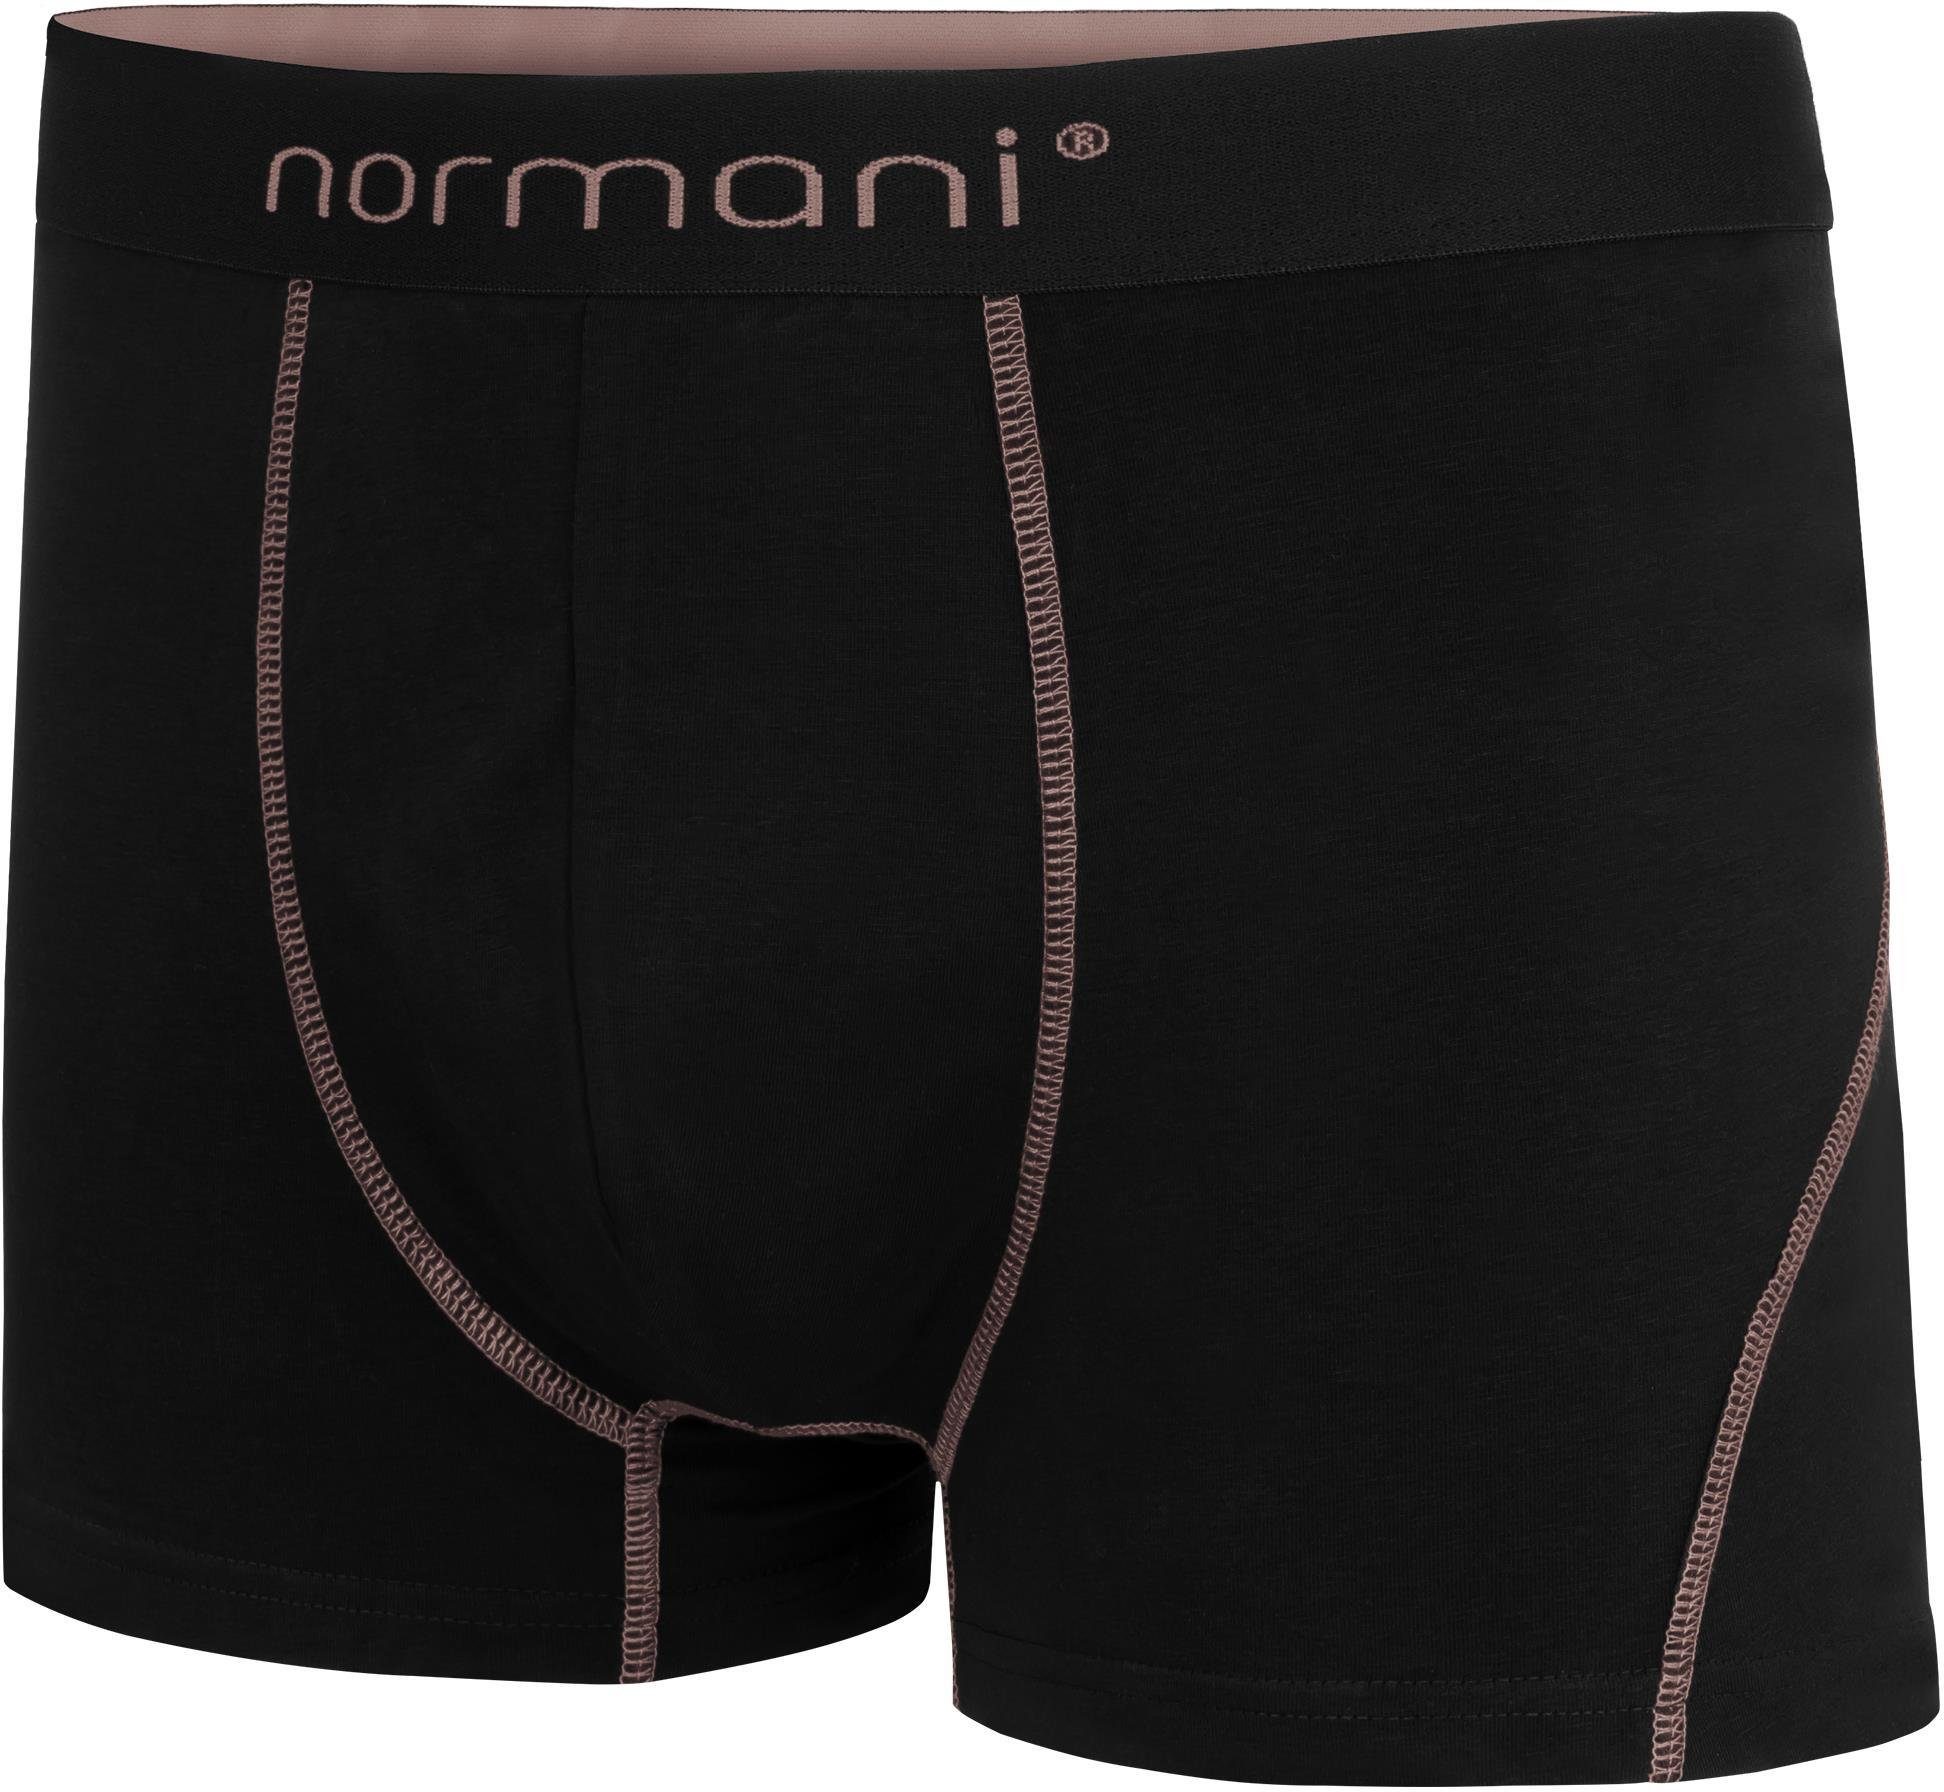 Lachs Männer für aus Boxershorts Baumwoll-Boxershorts 6 Unterhose normani Baumwolle atmungsaktiver Herren